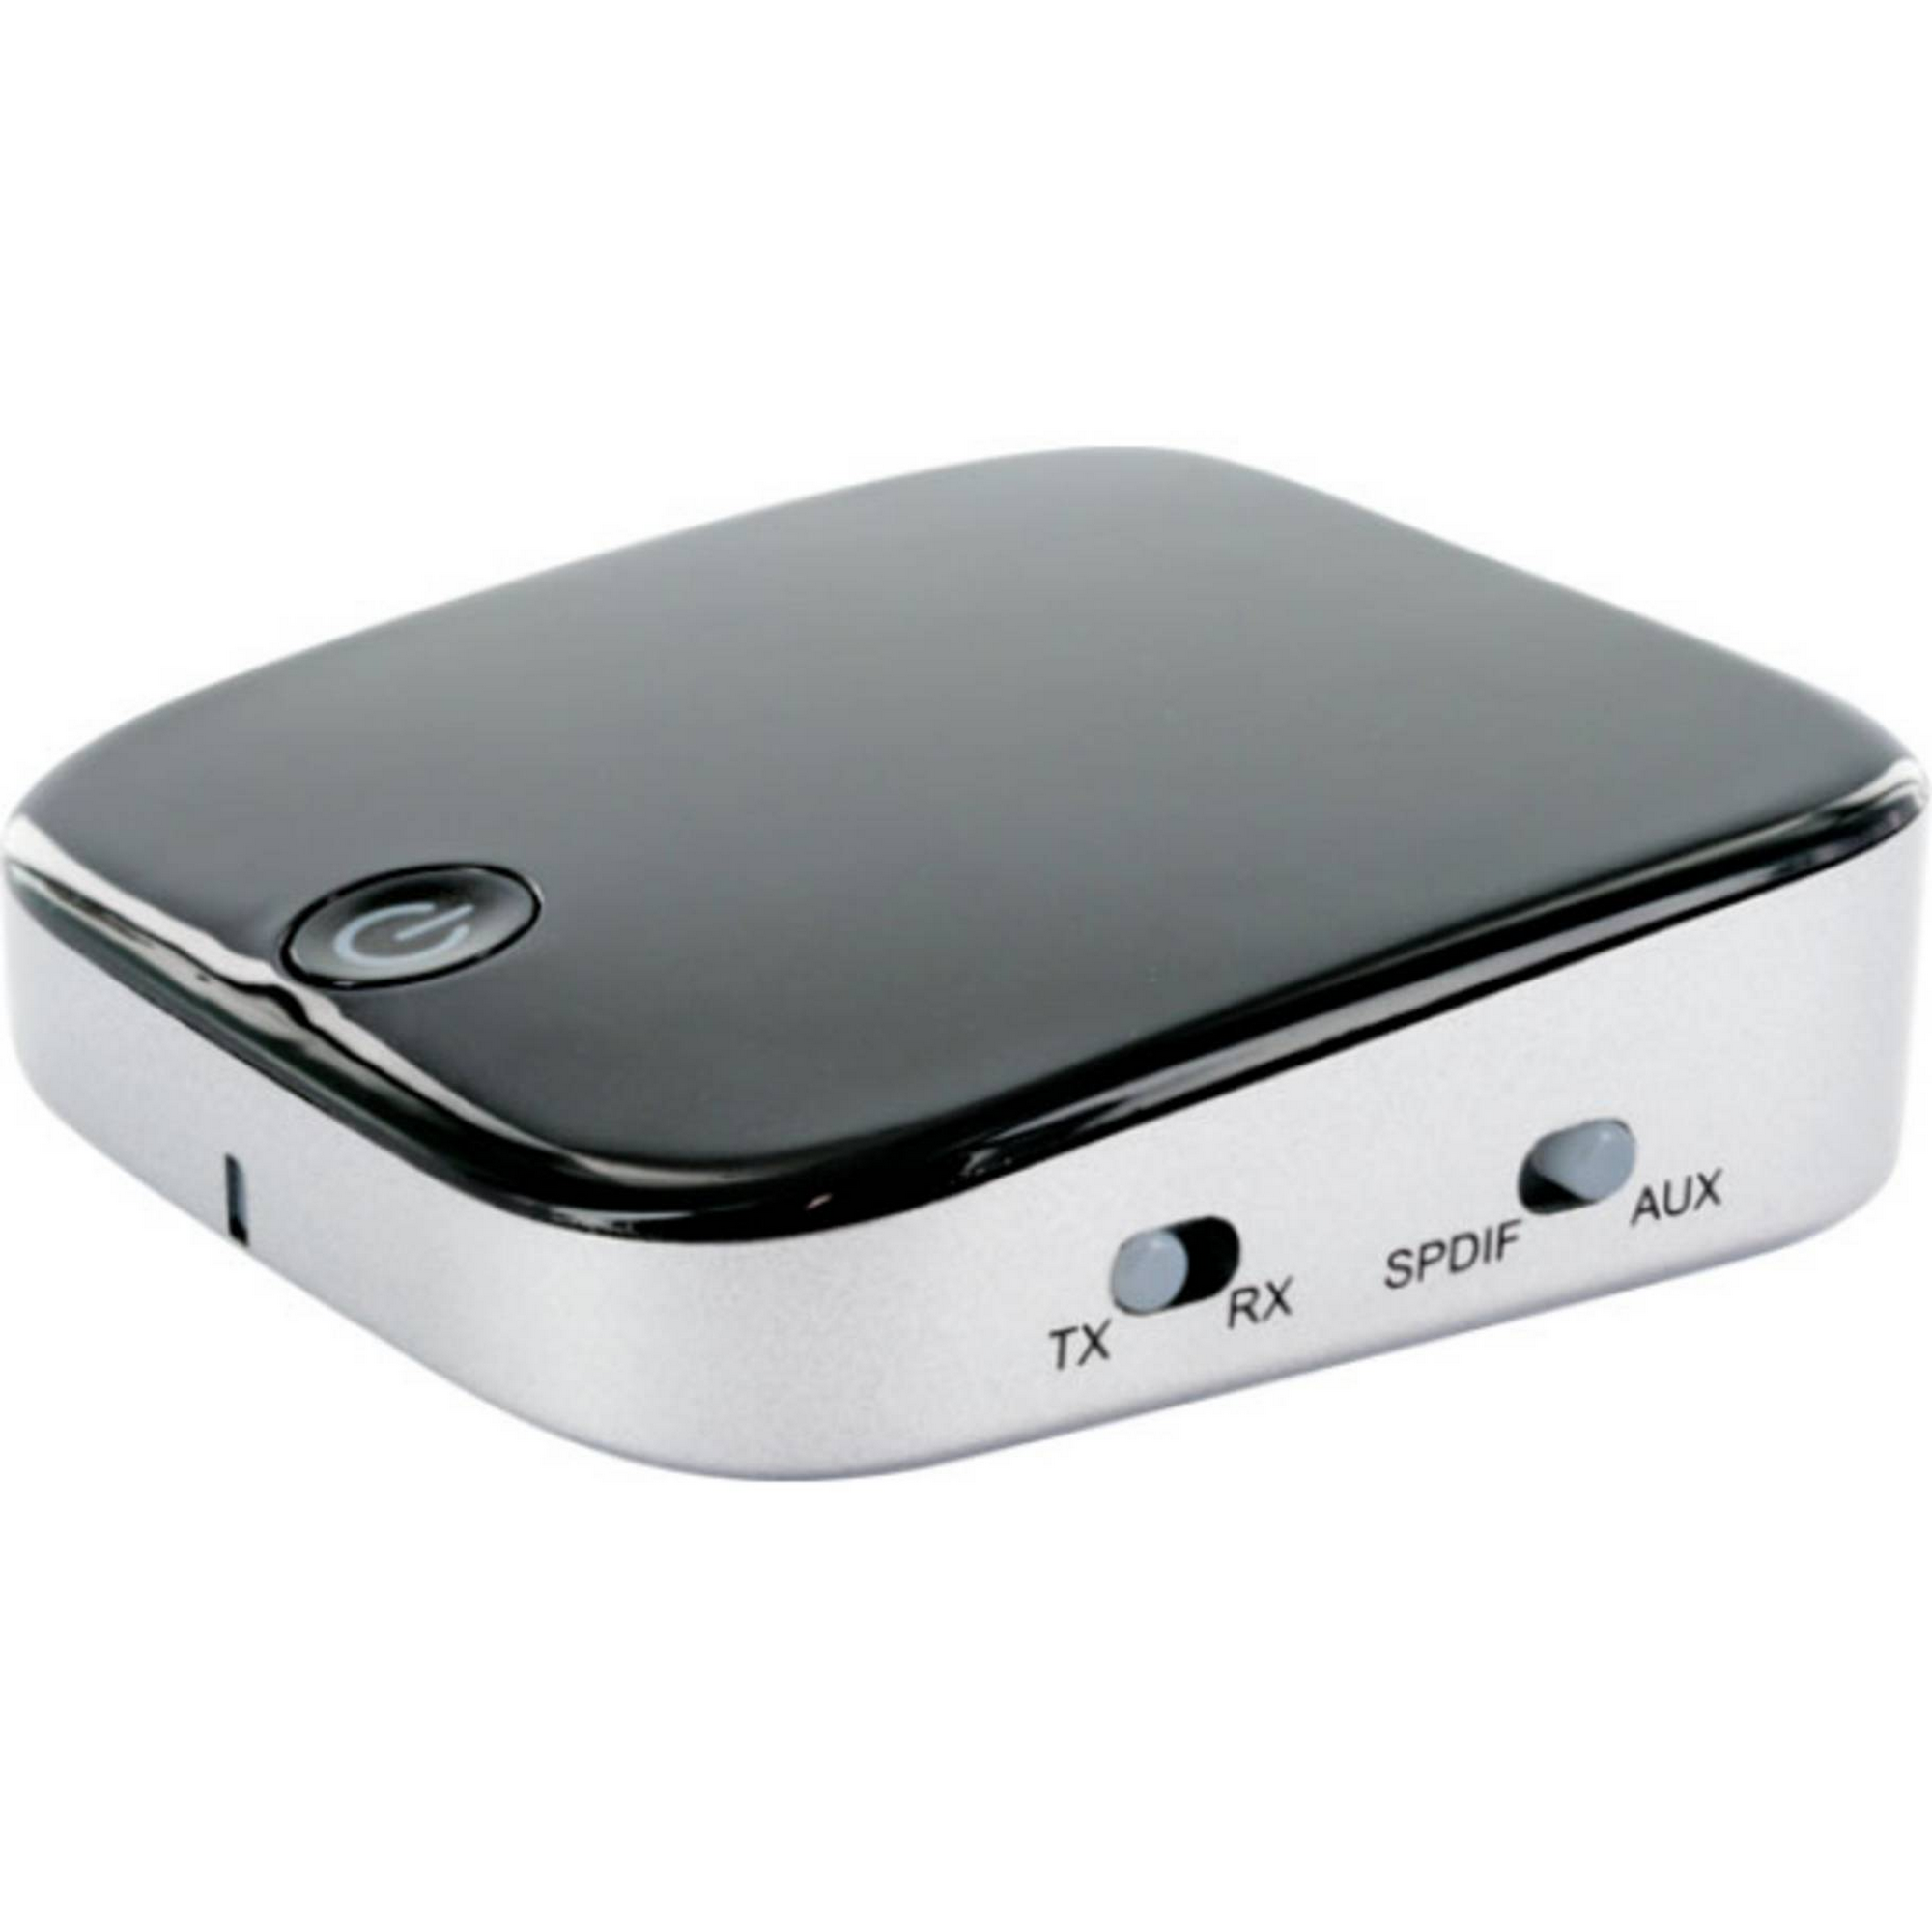 Akku-Bluetooth Sender und Empfänger schwarz/grau 5 V + product picture